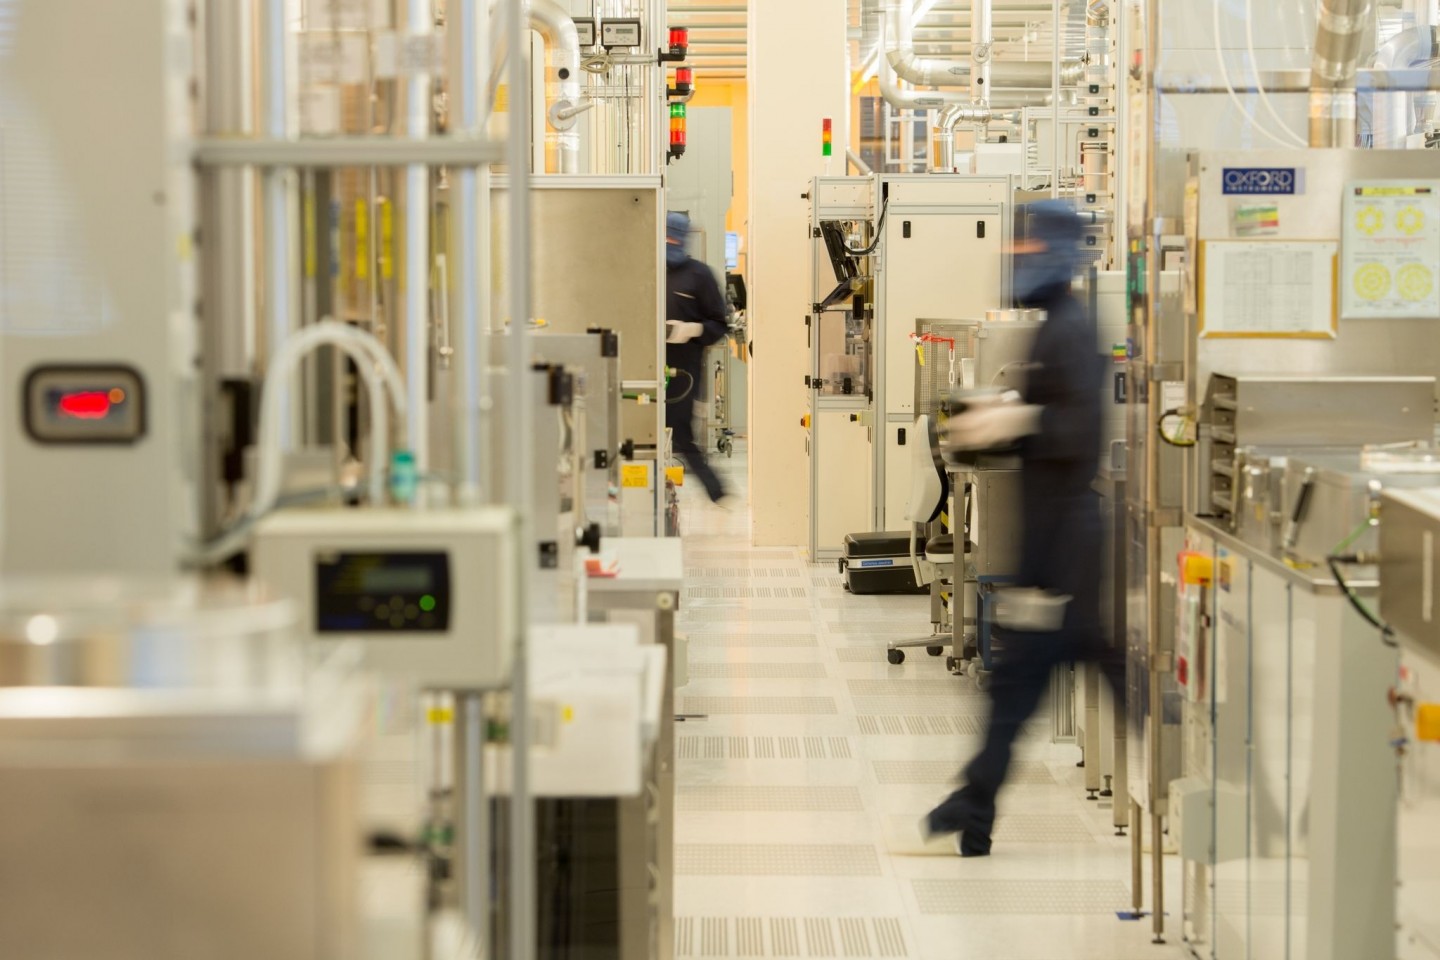 Ein Angestellter von Osram Opto Semiconductors geht durch einen Reinraum in der LED-Produktion im Osram-Werk in Regensburg (Symbolbild).